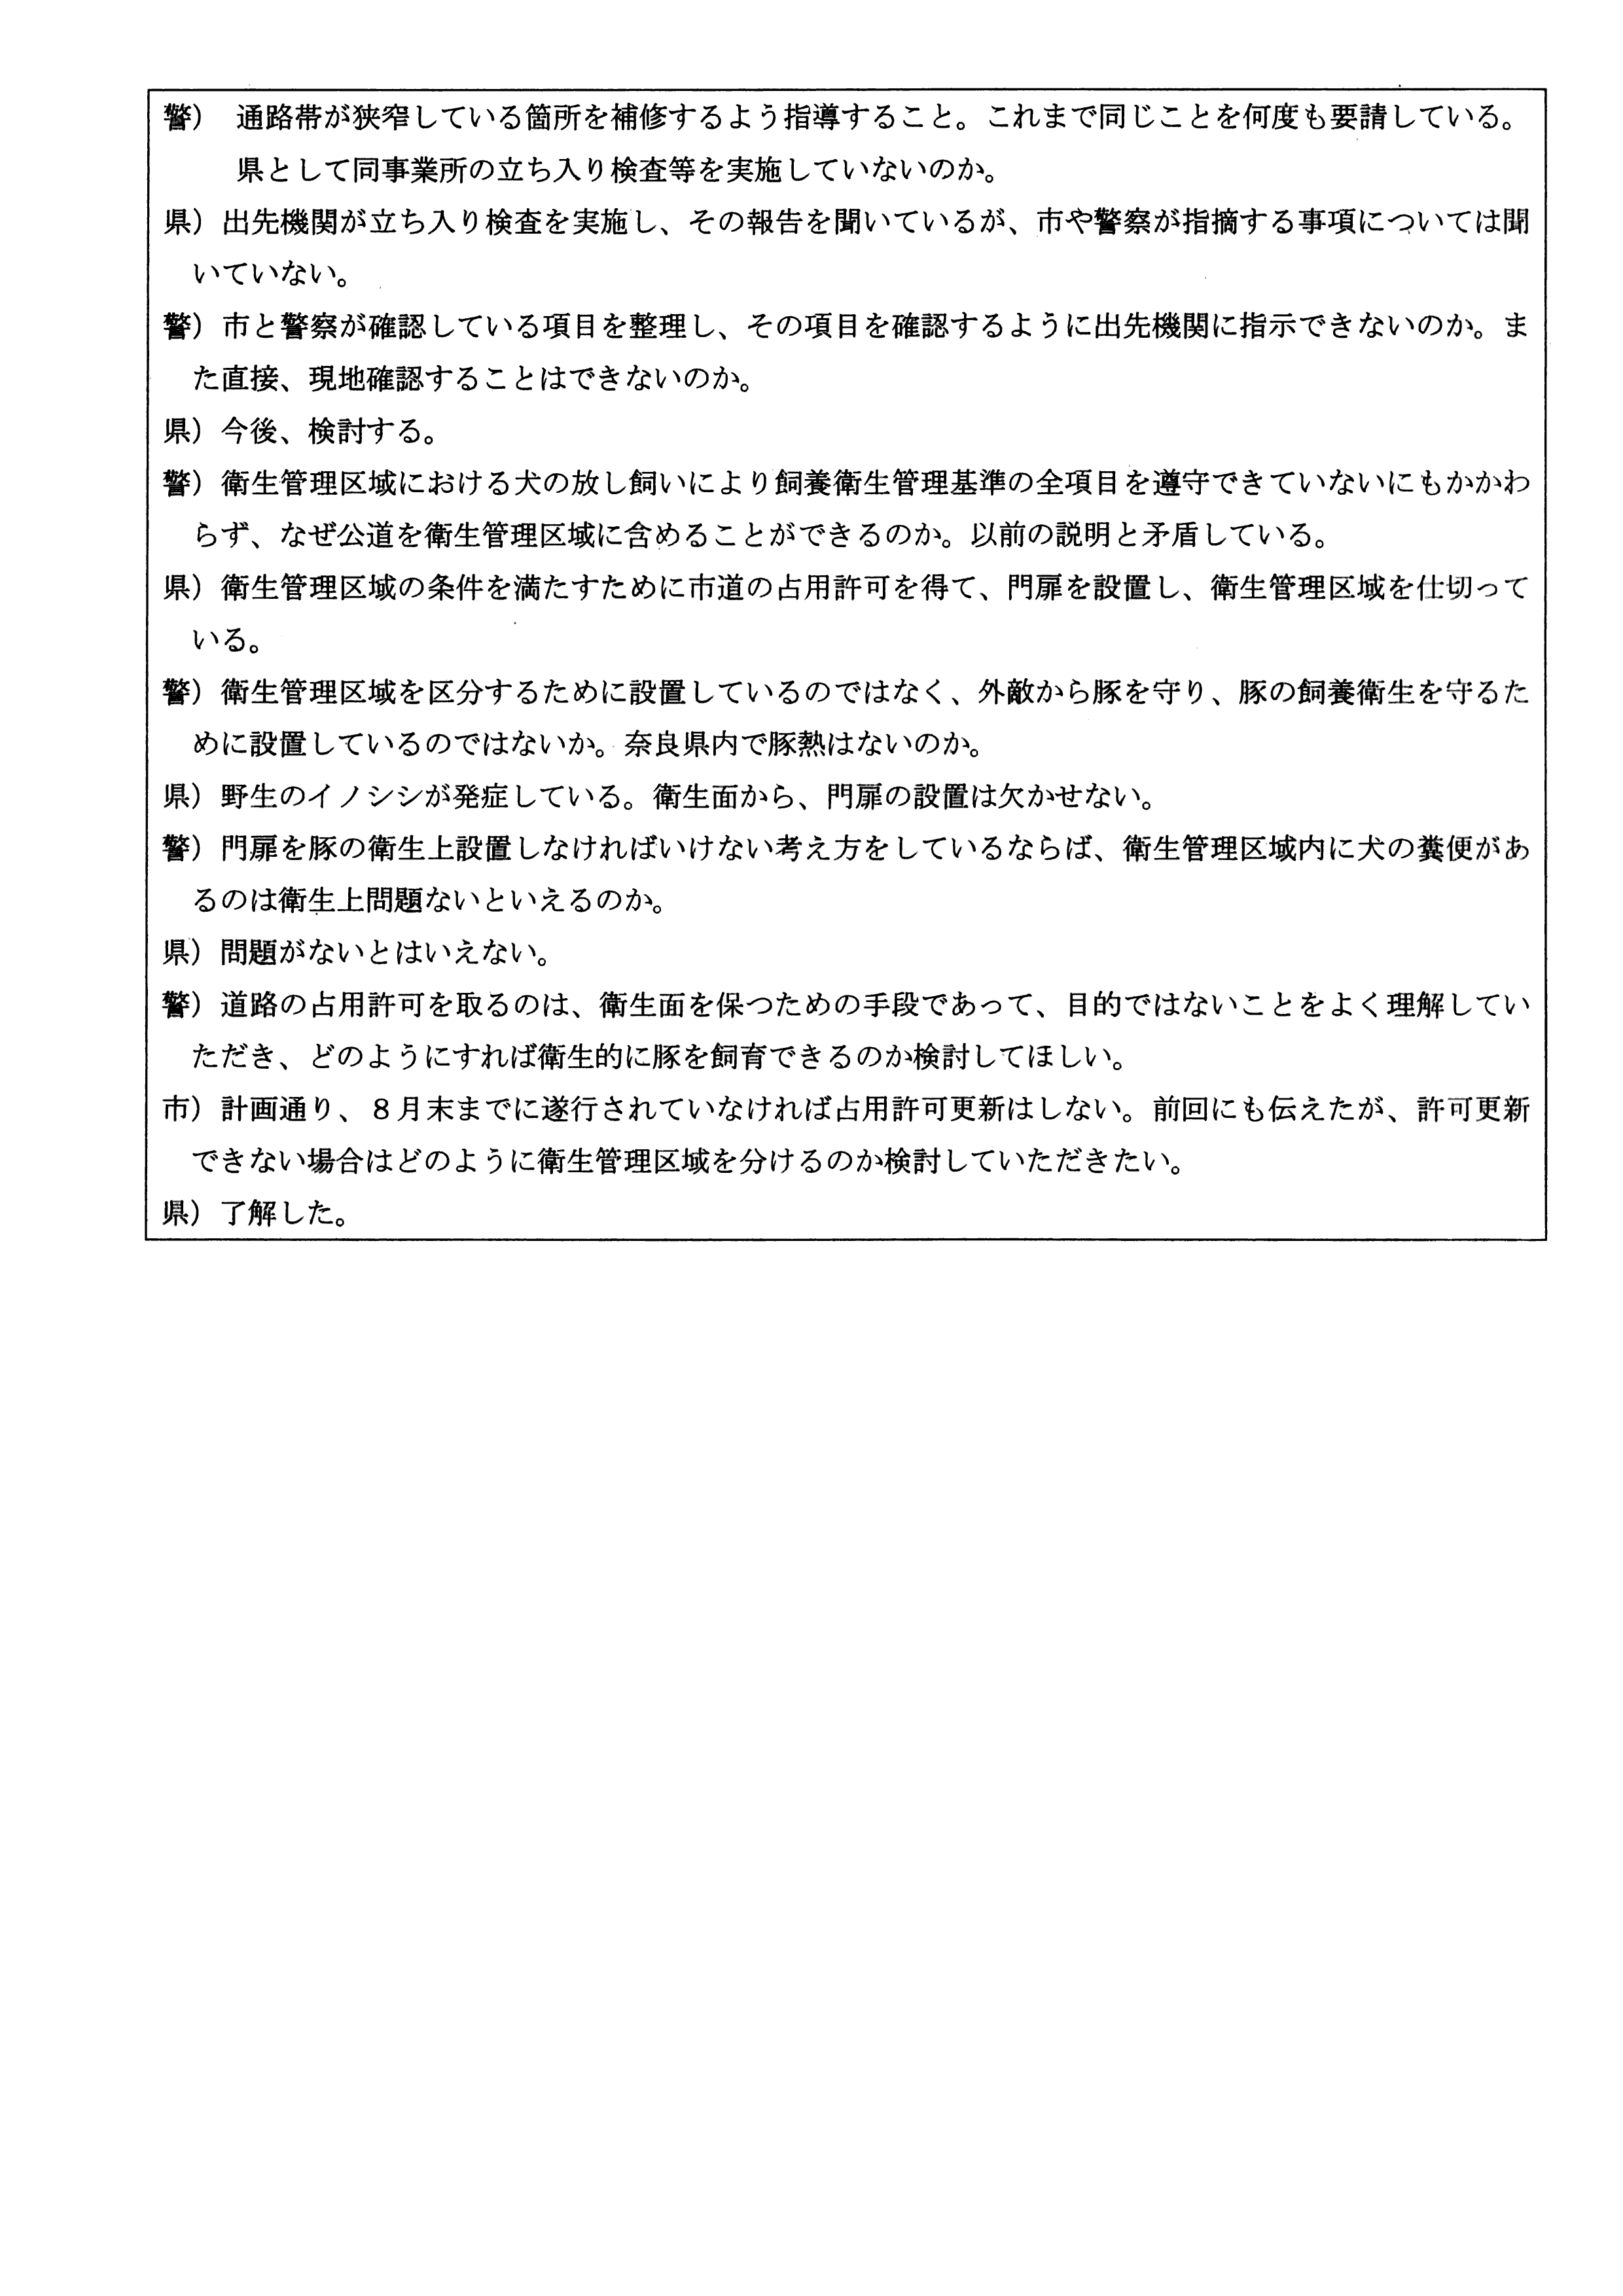 令和6(2024)年3月6日-(株)村田商店による道路使用及び道路占用許可に関する協議-02